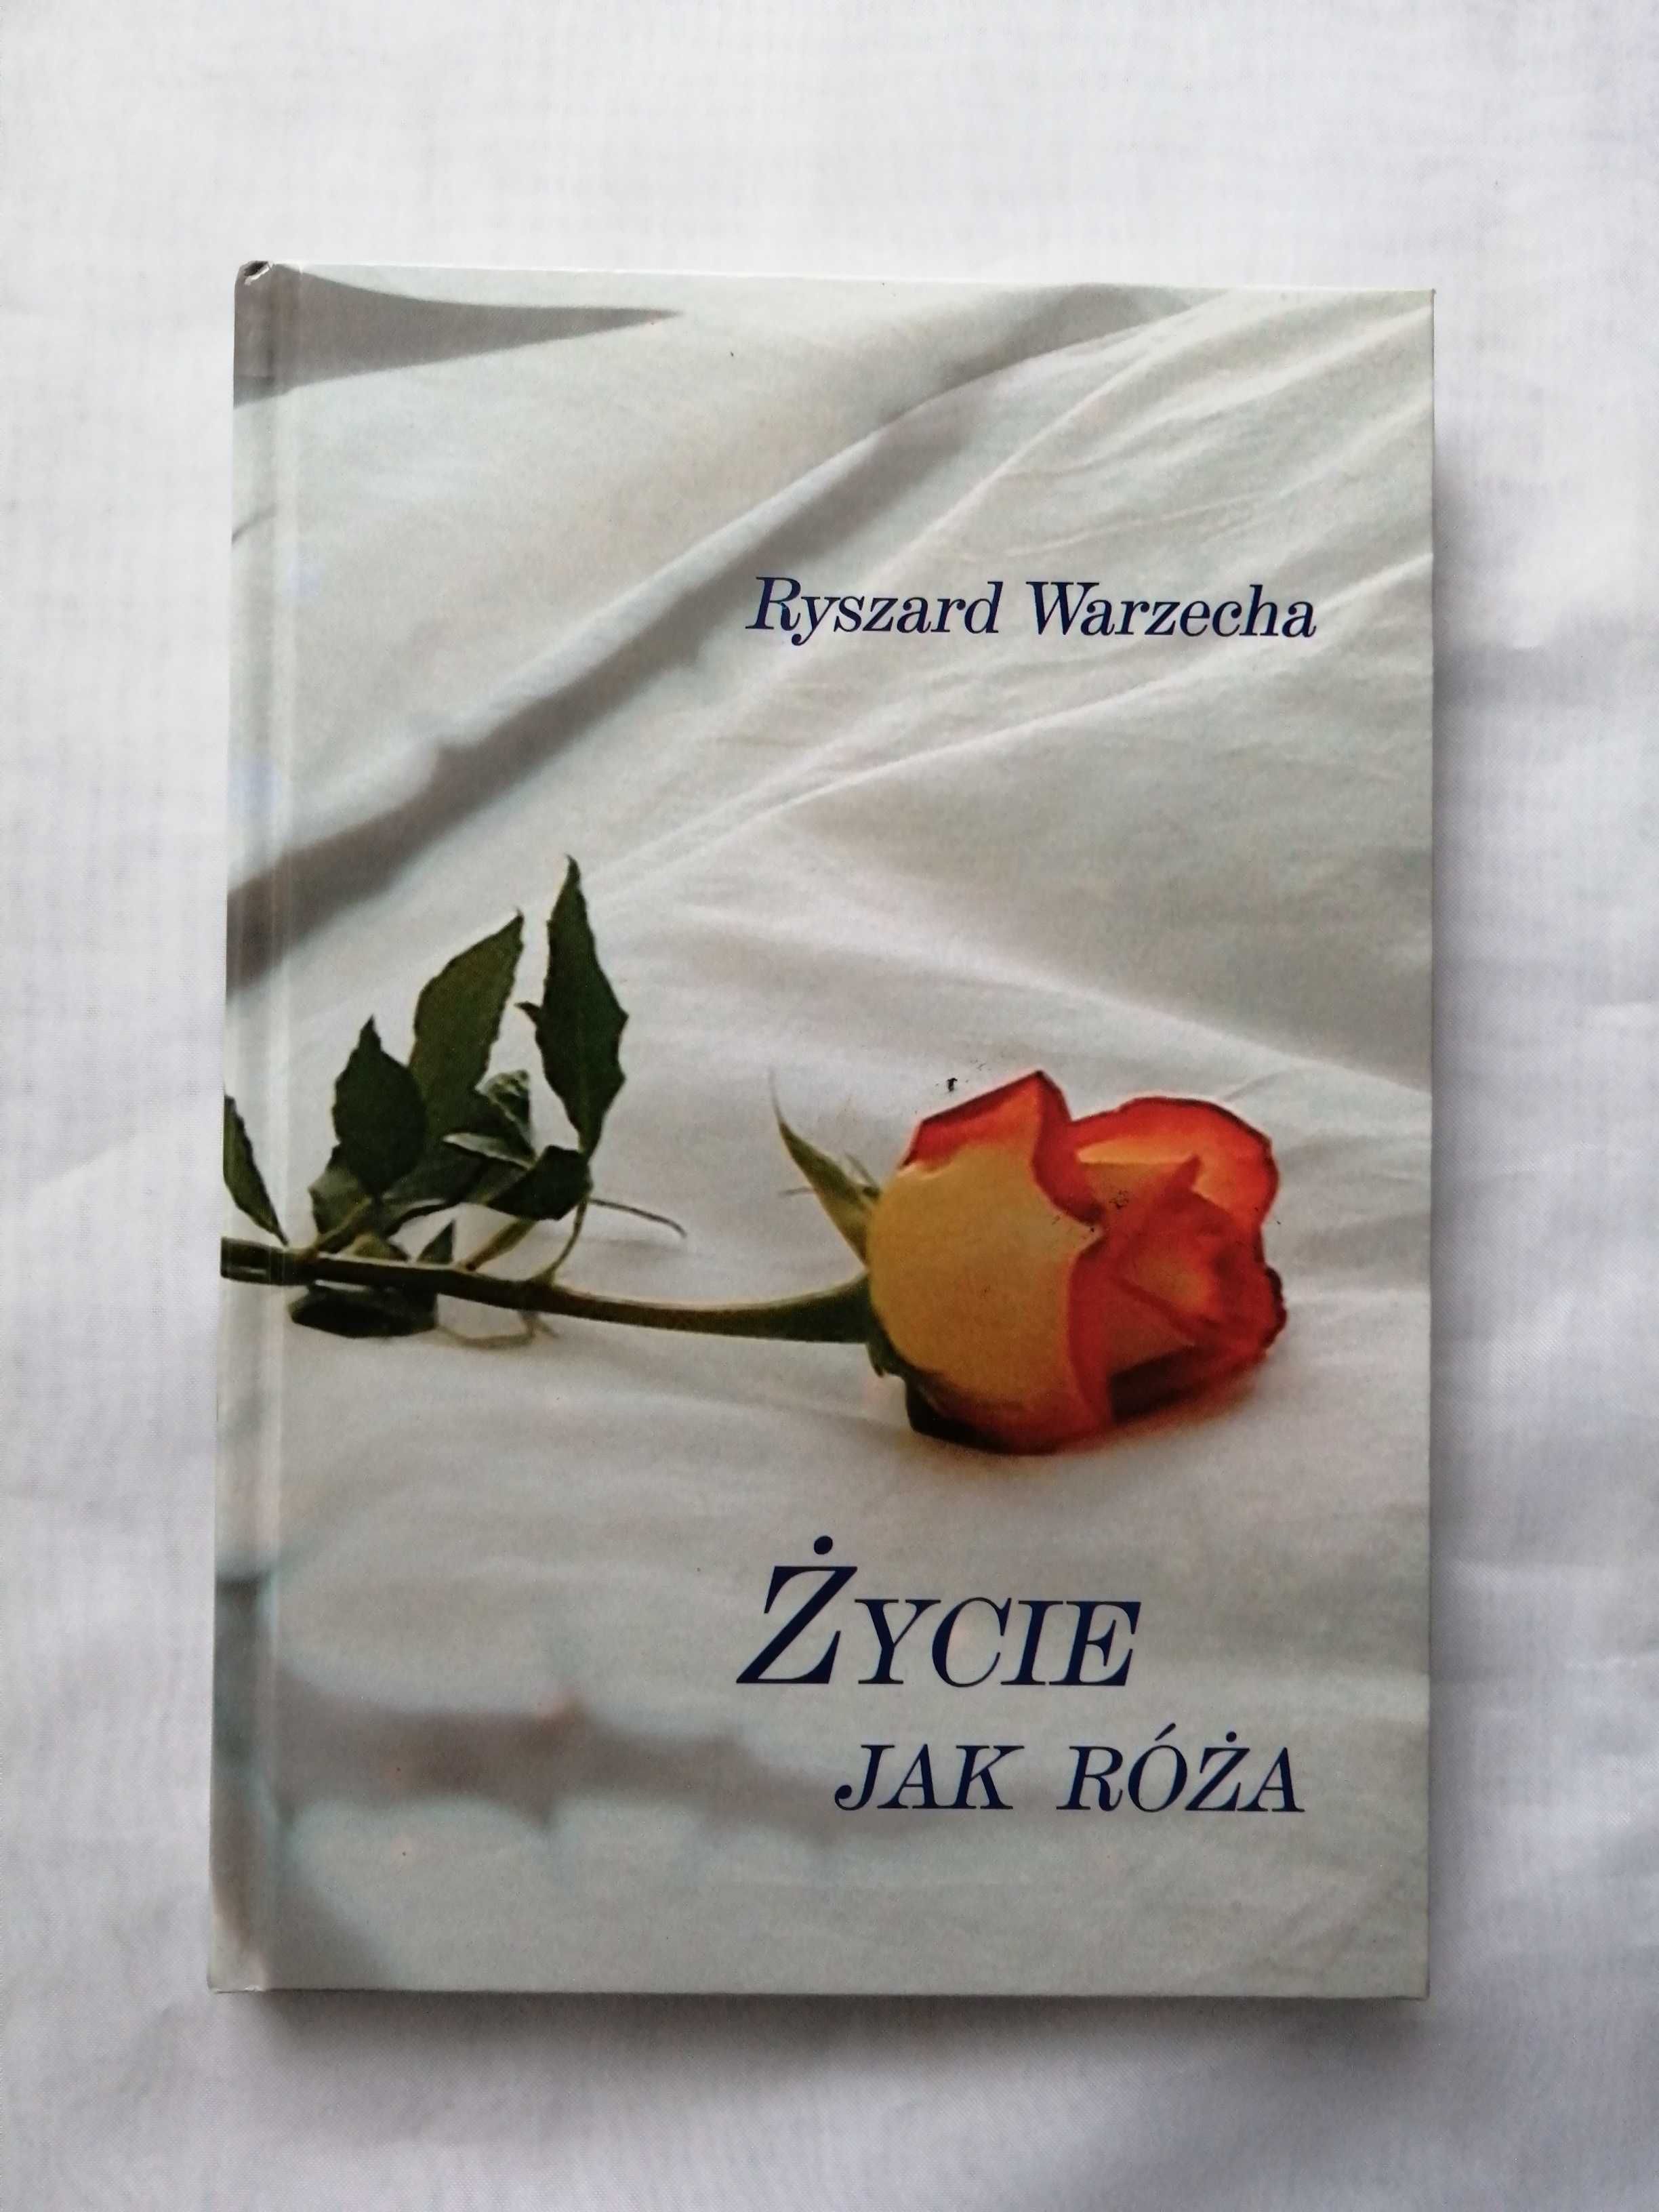 Ryszard Warzecha "Życie jak róża", książka, tomik poezji